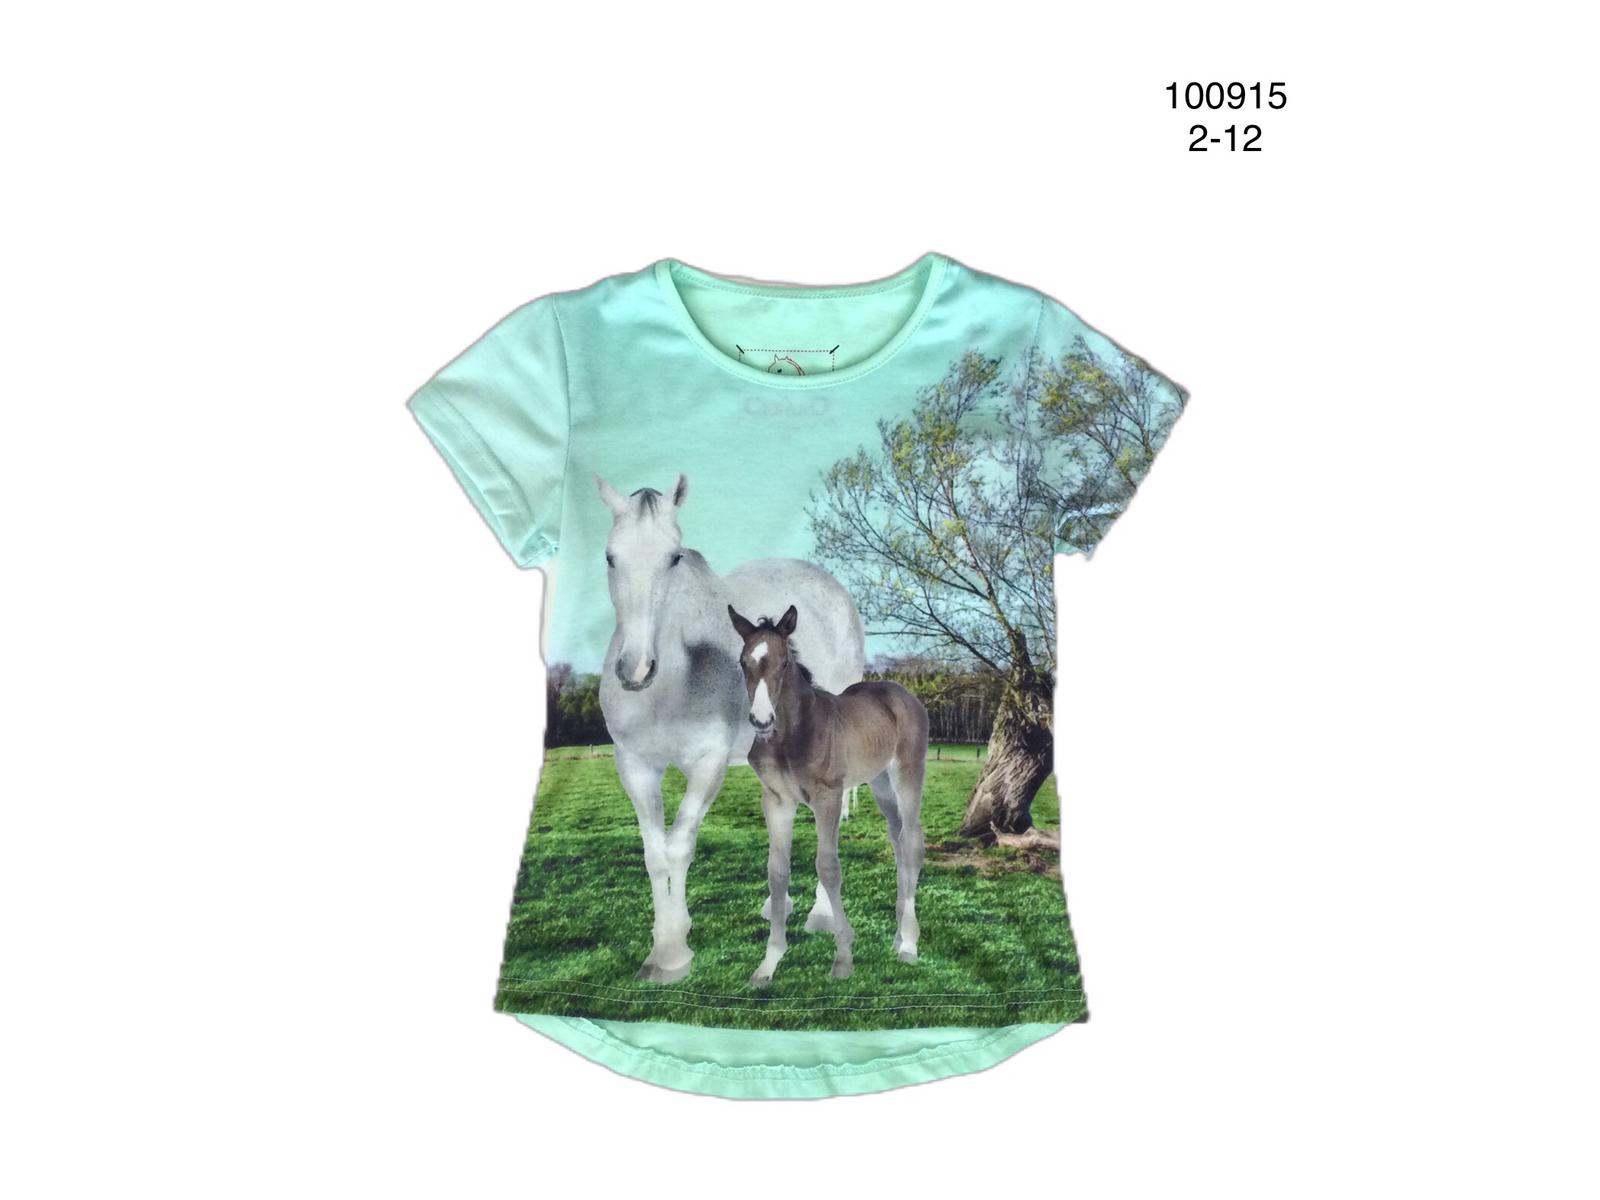 Groen shirt met paard en veulen